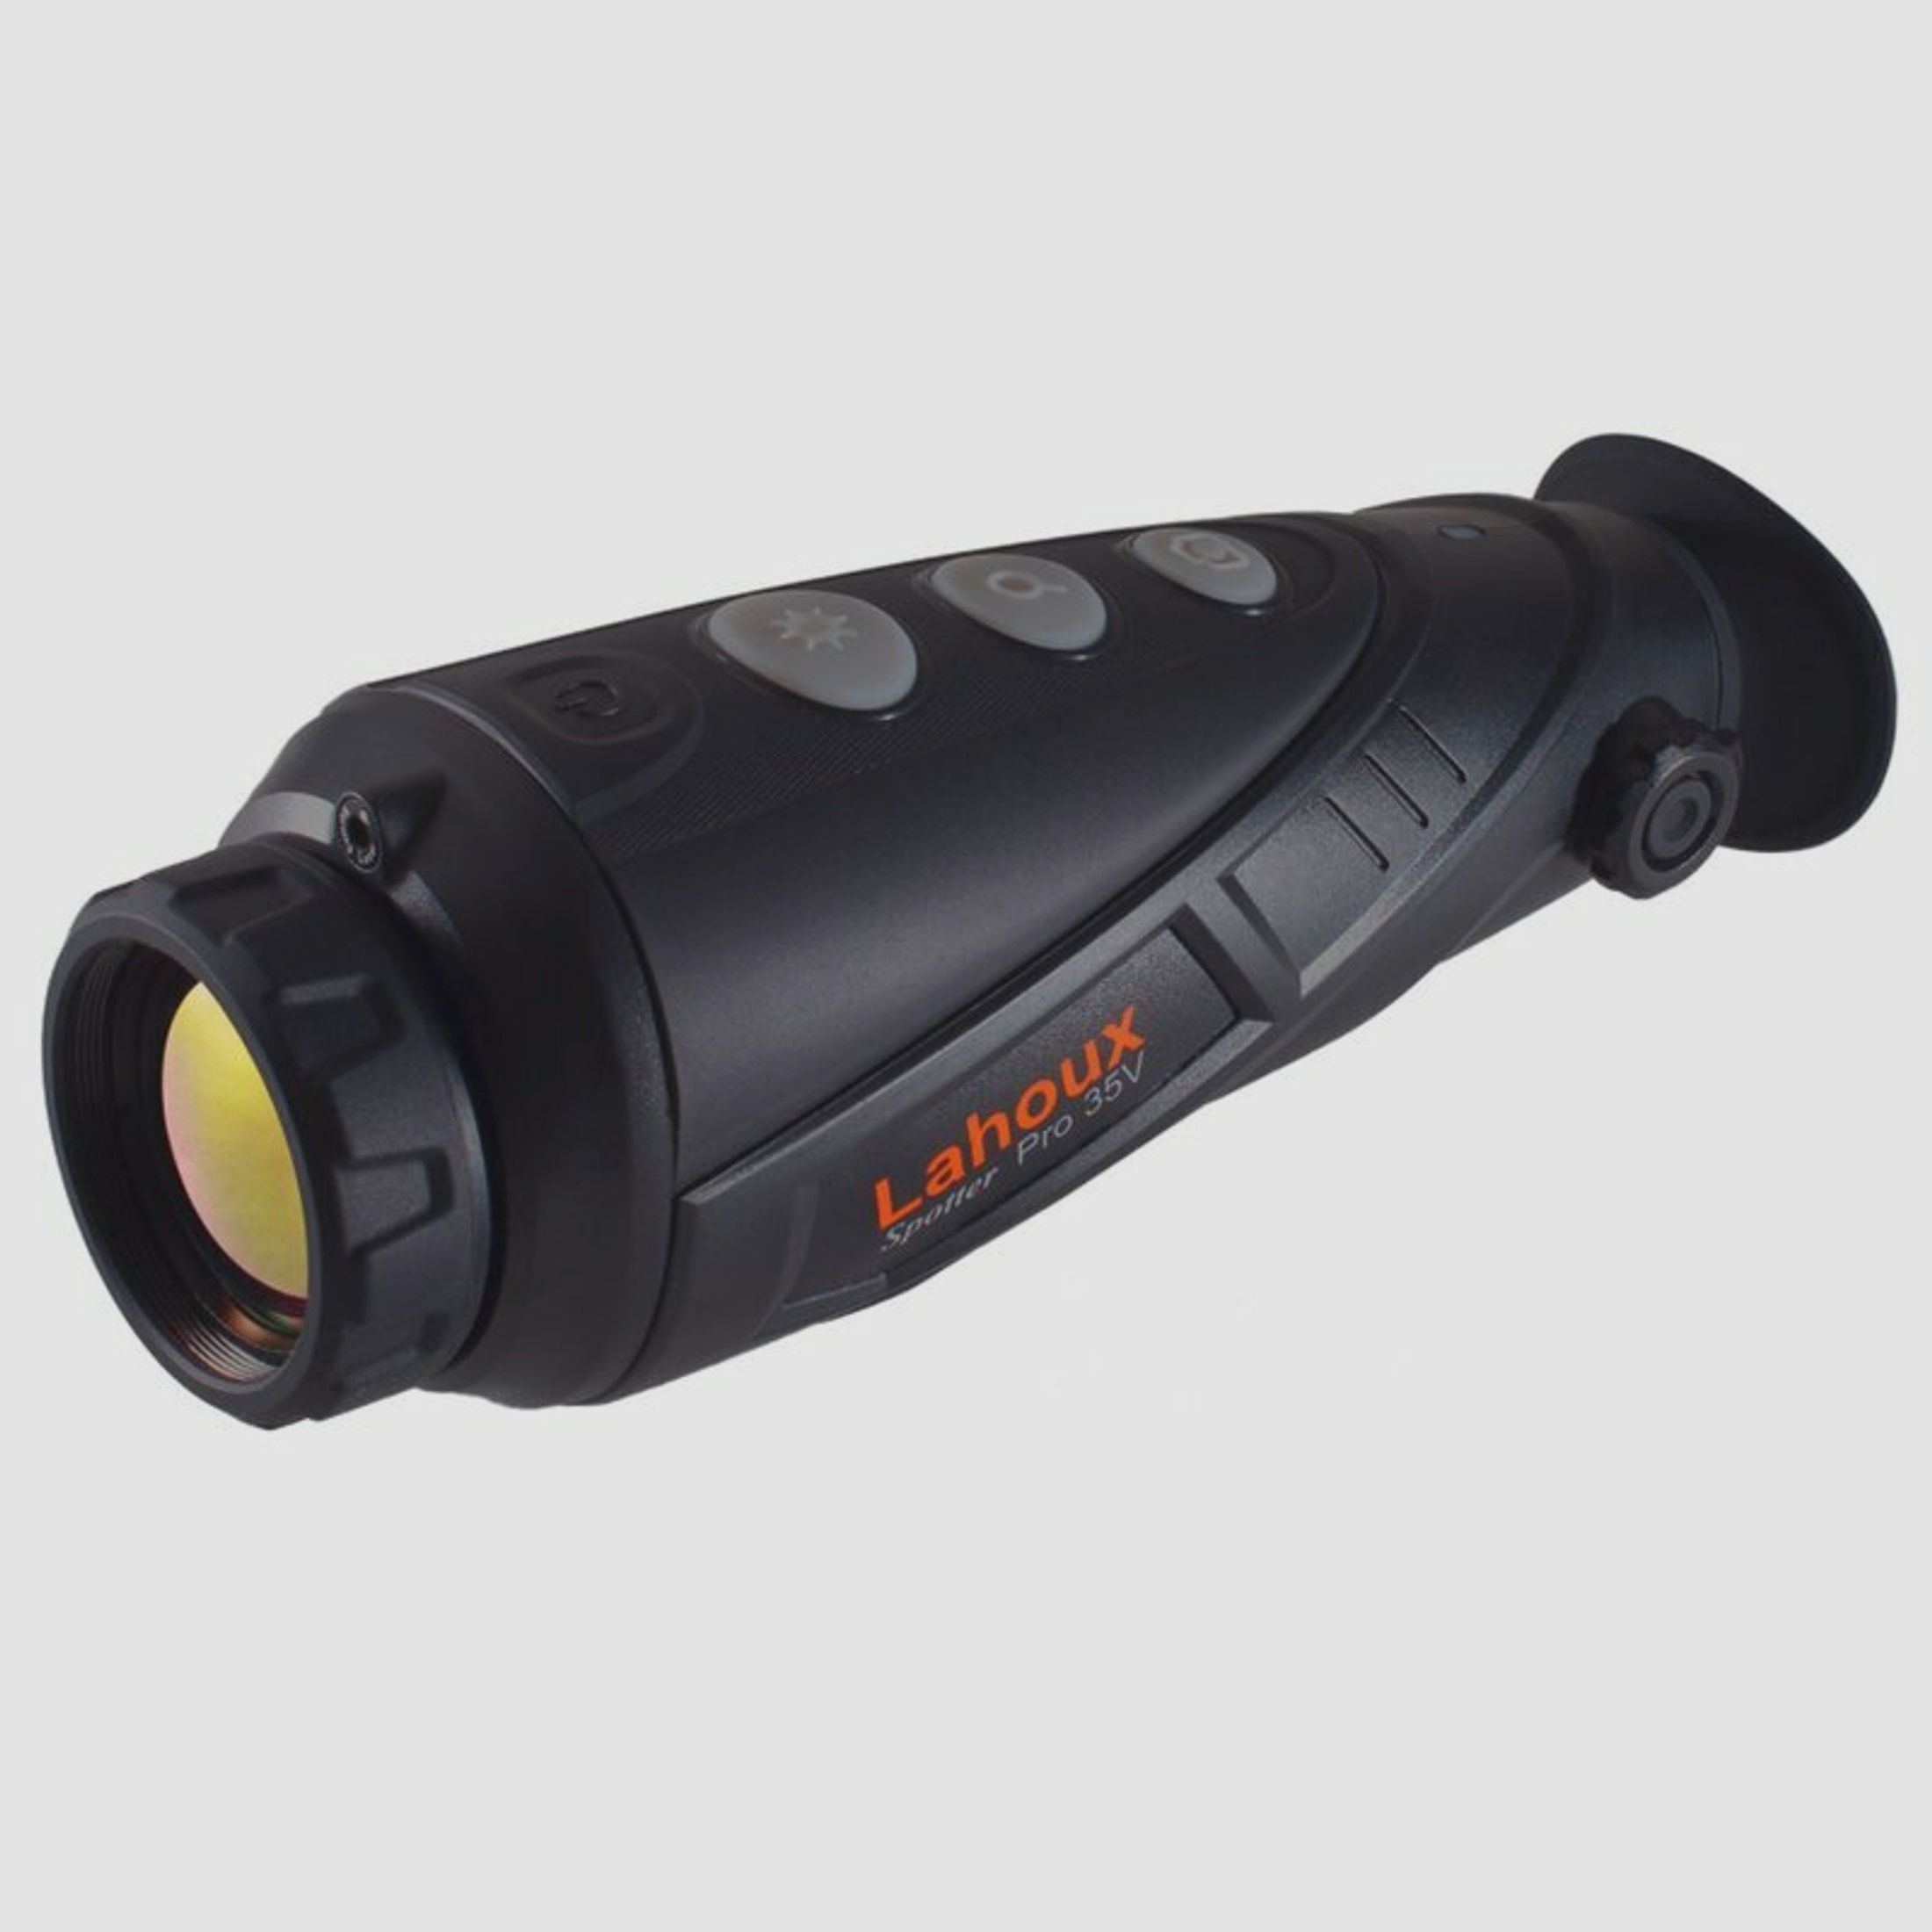 Lahoux Nachtsichtgerät Spotter Pro 35V